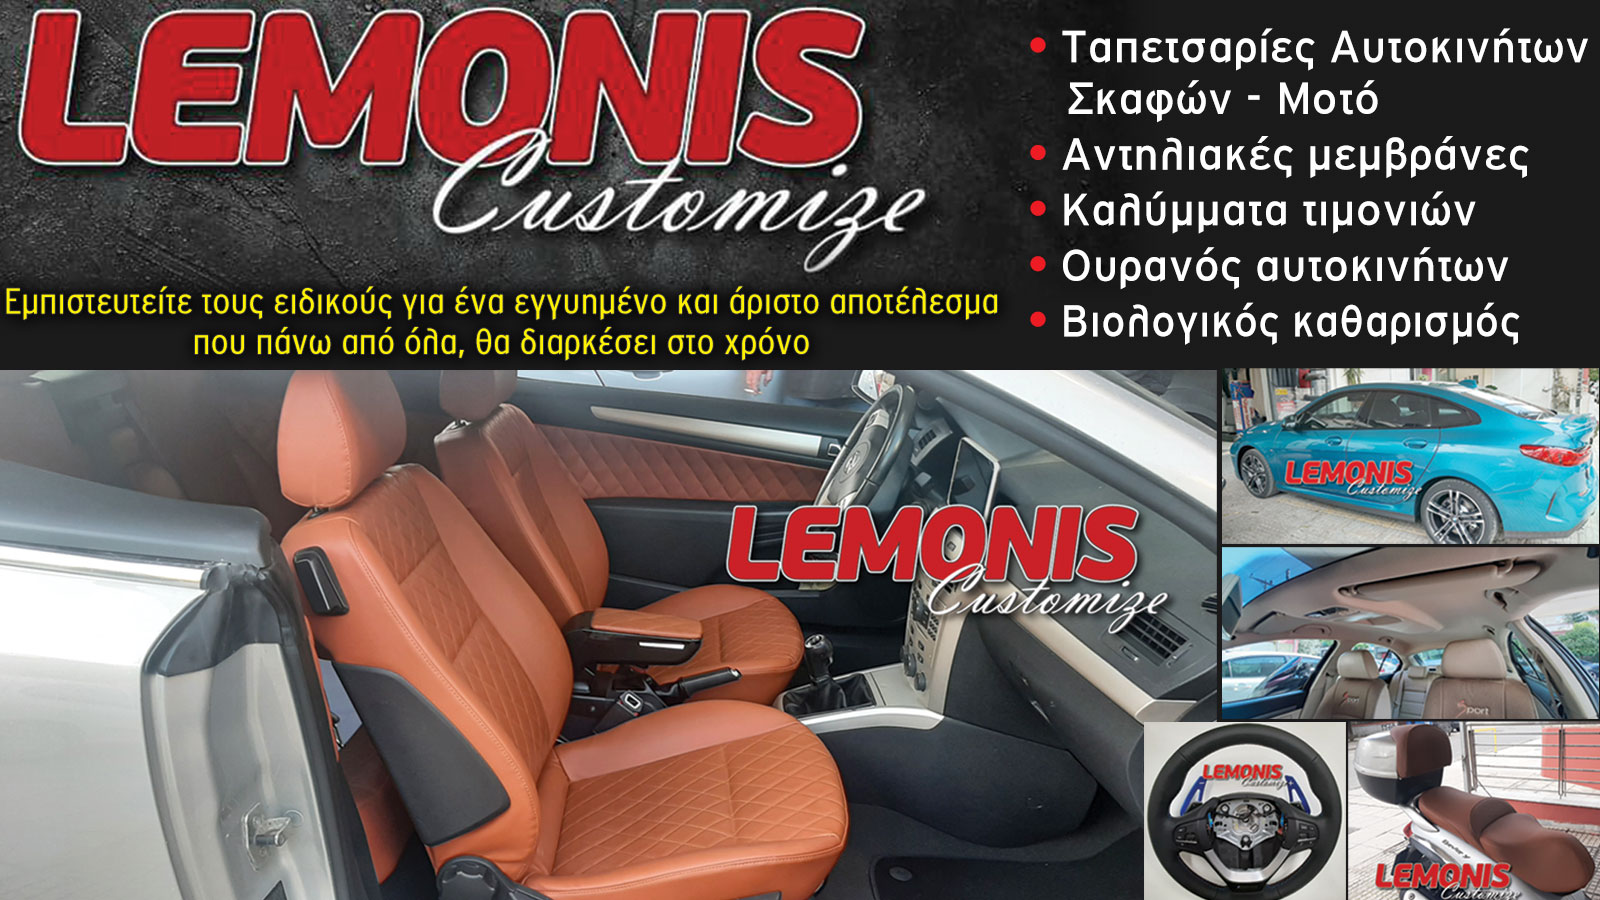 Ταπετσαρίες, μεμβράνες, καλύμματα αυτοκινήτων  στο Παλαιό Φάληρο - Lemonis Customize